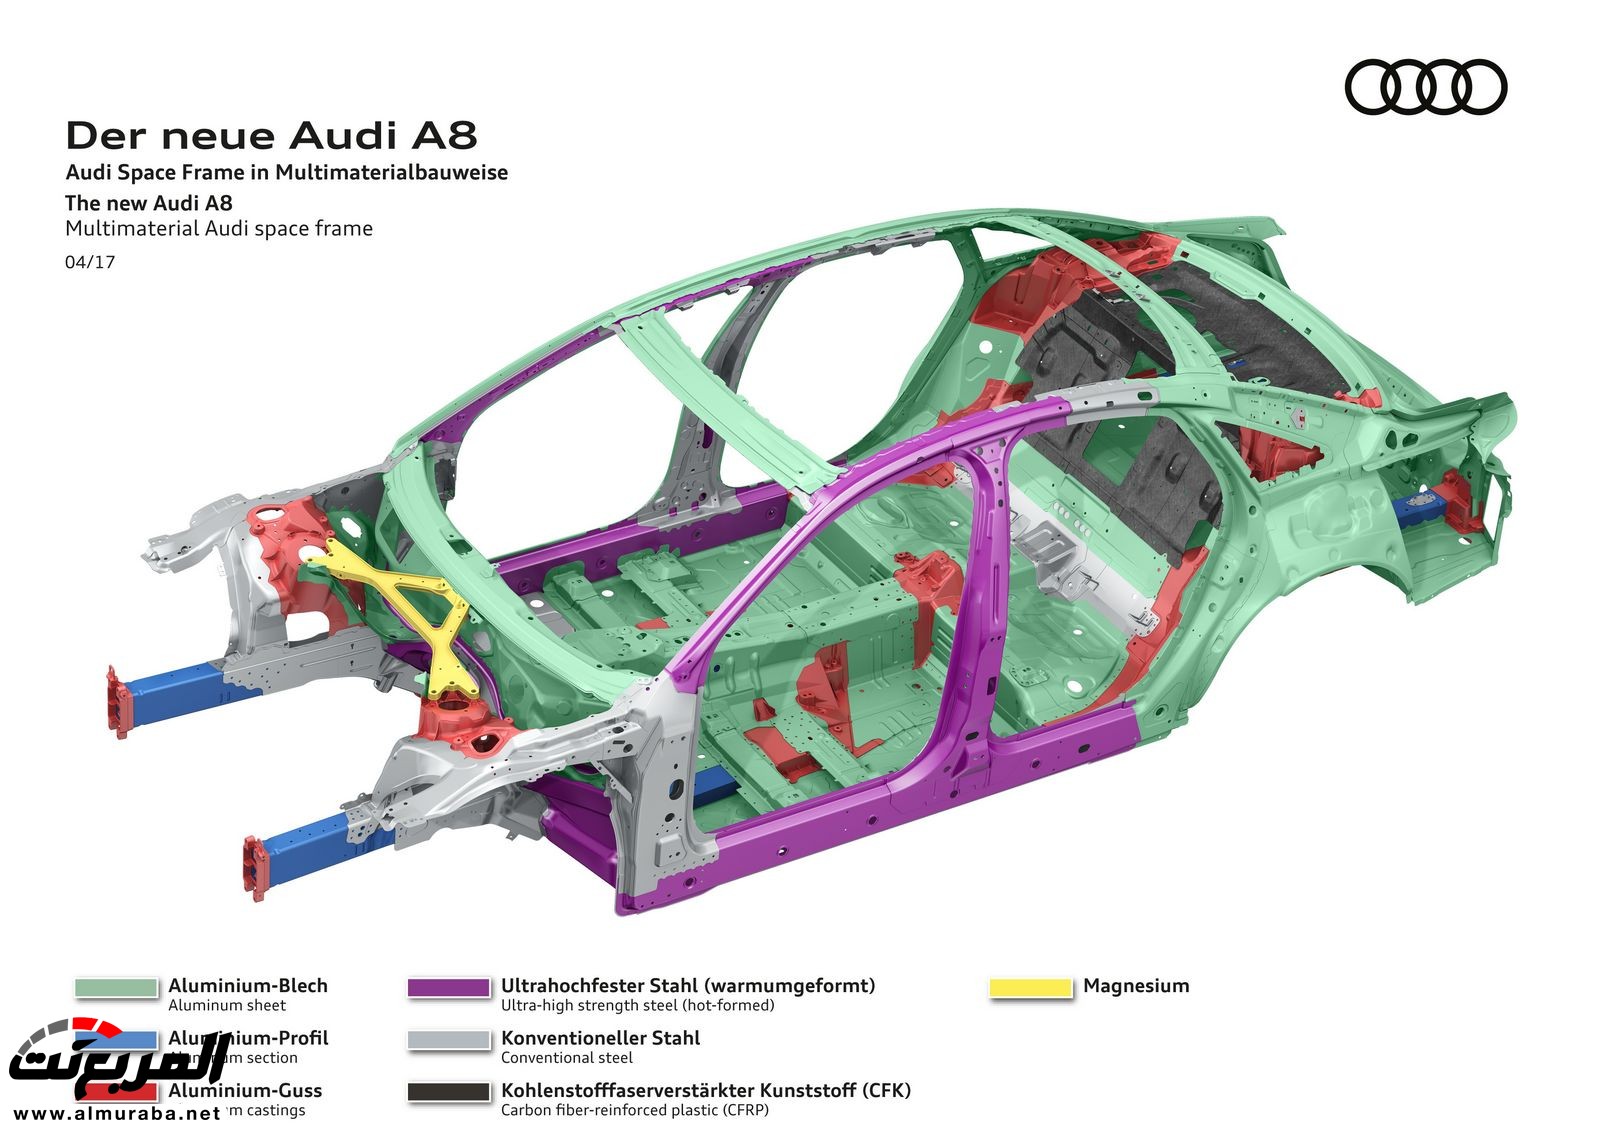 أودي A8 2018 الجديدة كلياً تكشف نفسها بتصميم وتقنيات متطورة "معلومات + 100 صورة" Audi A8 46